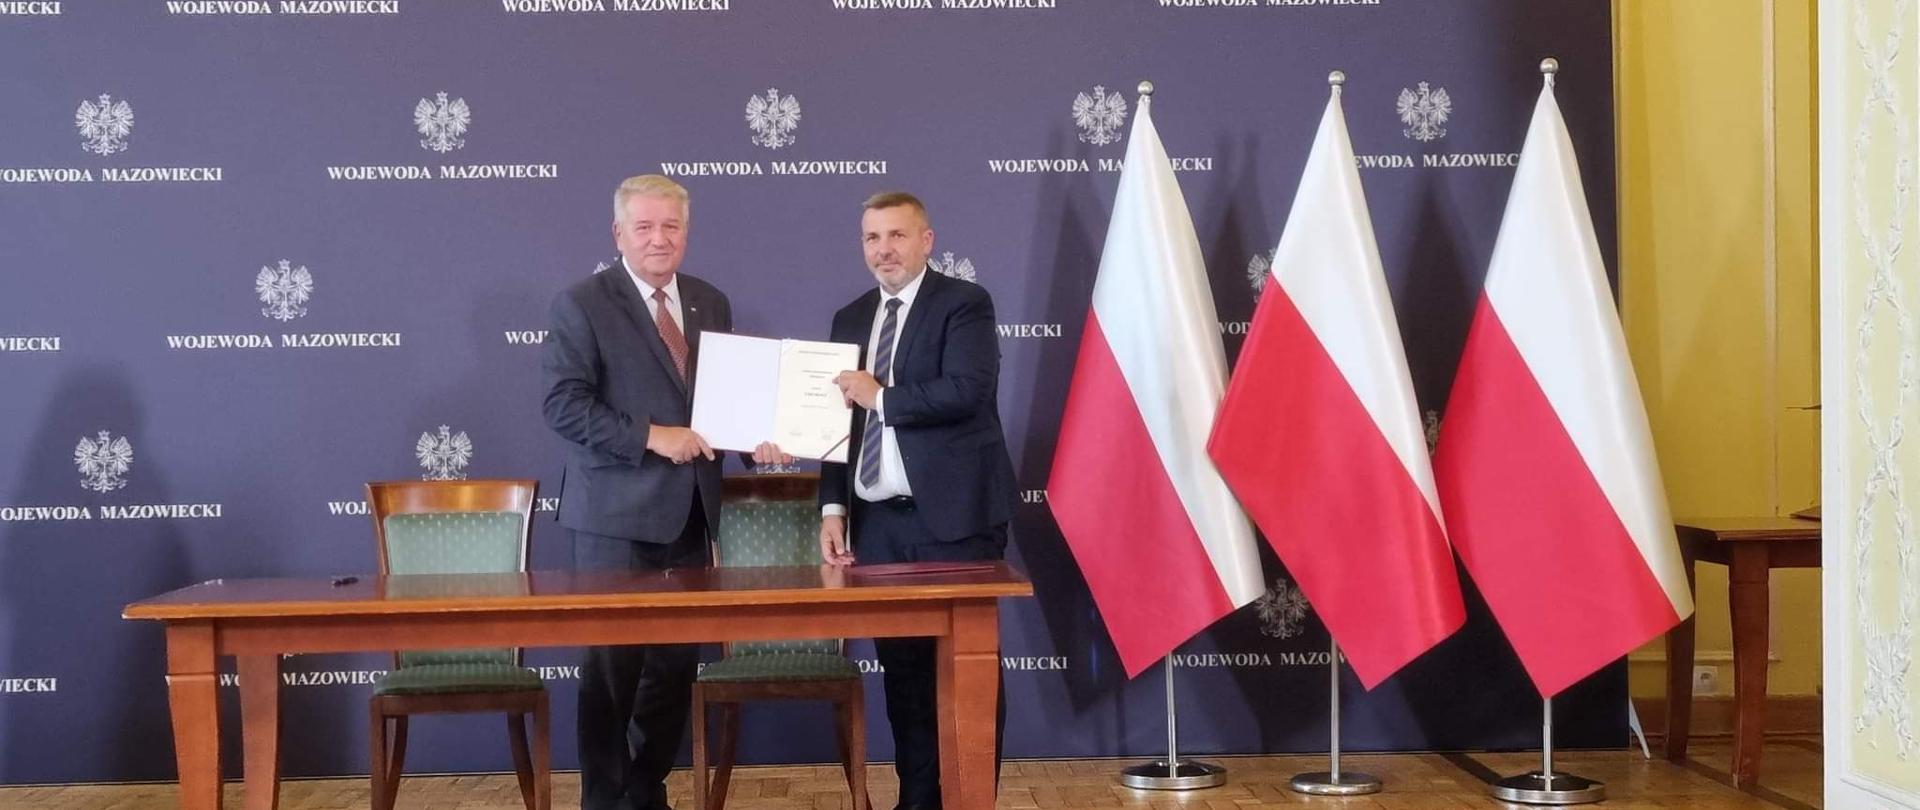 Uroczystość podpisania umów w Mazowieckim Urzędzie Wojewódzkim w Warszawie